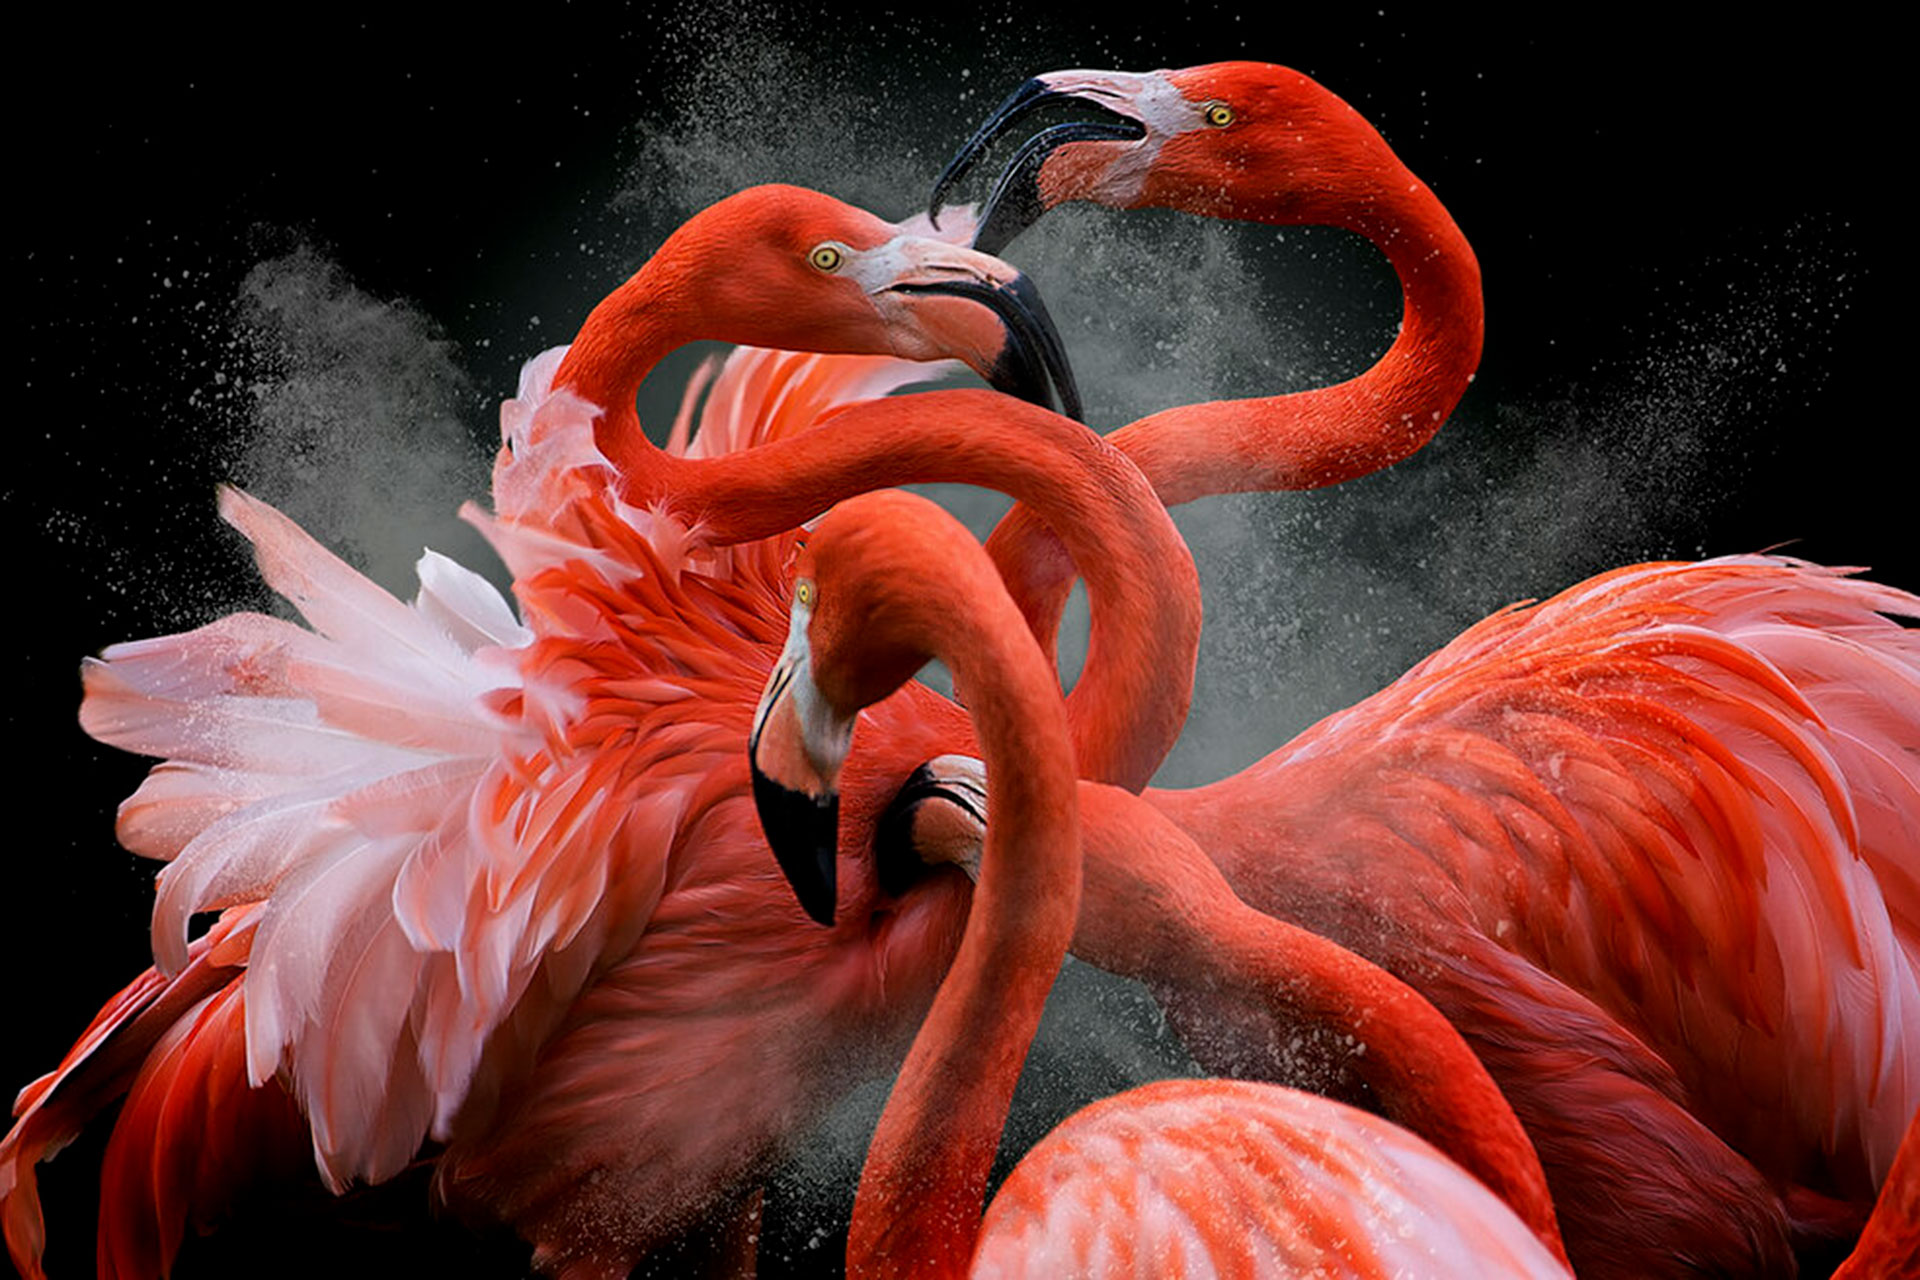 برندگان مسابقه عکاسی BPOTY؛ زیباترین تصاویر از دنیای پرندگان